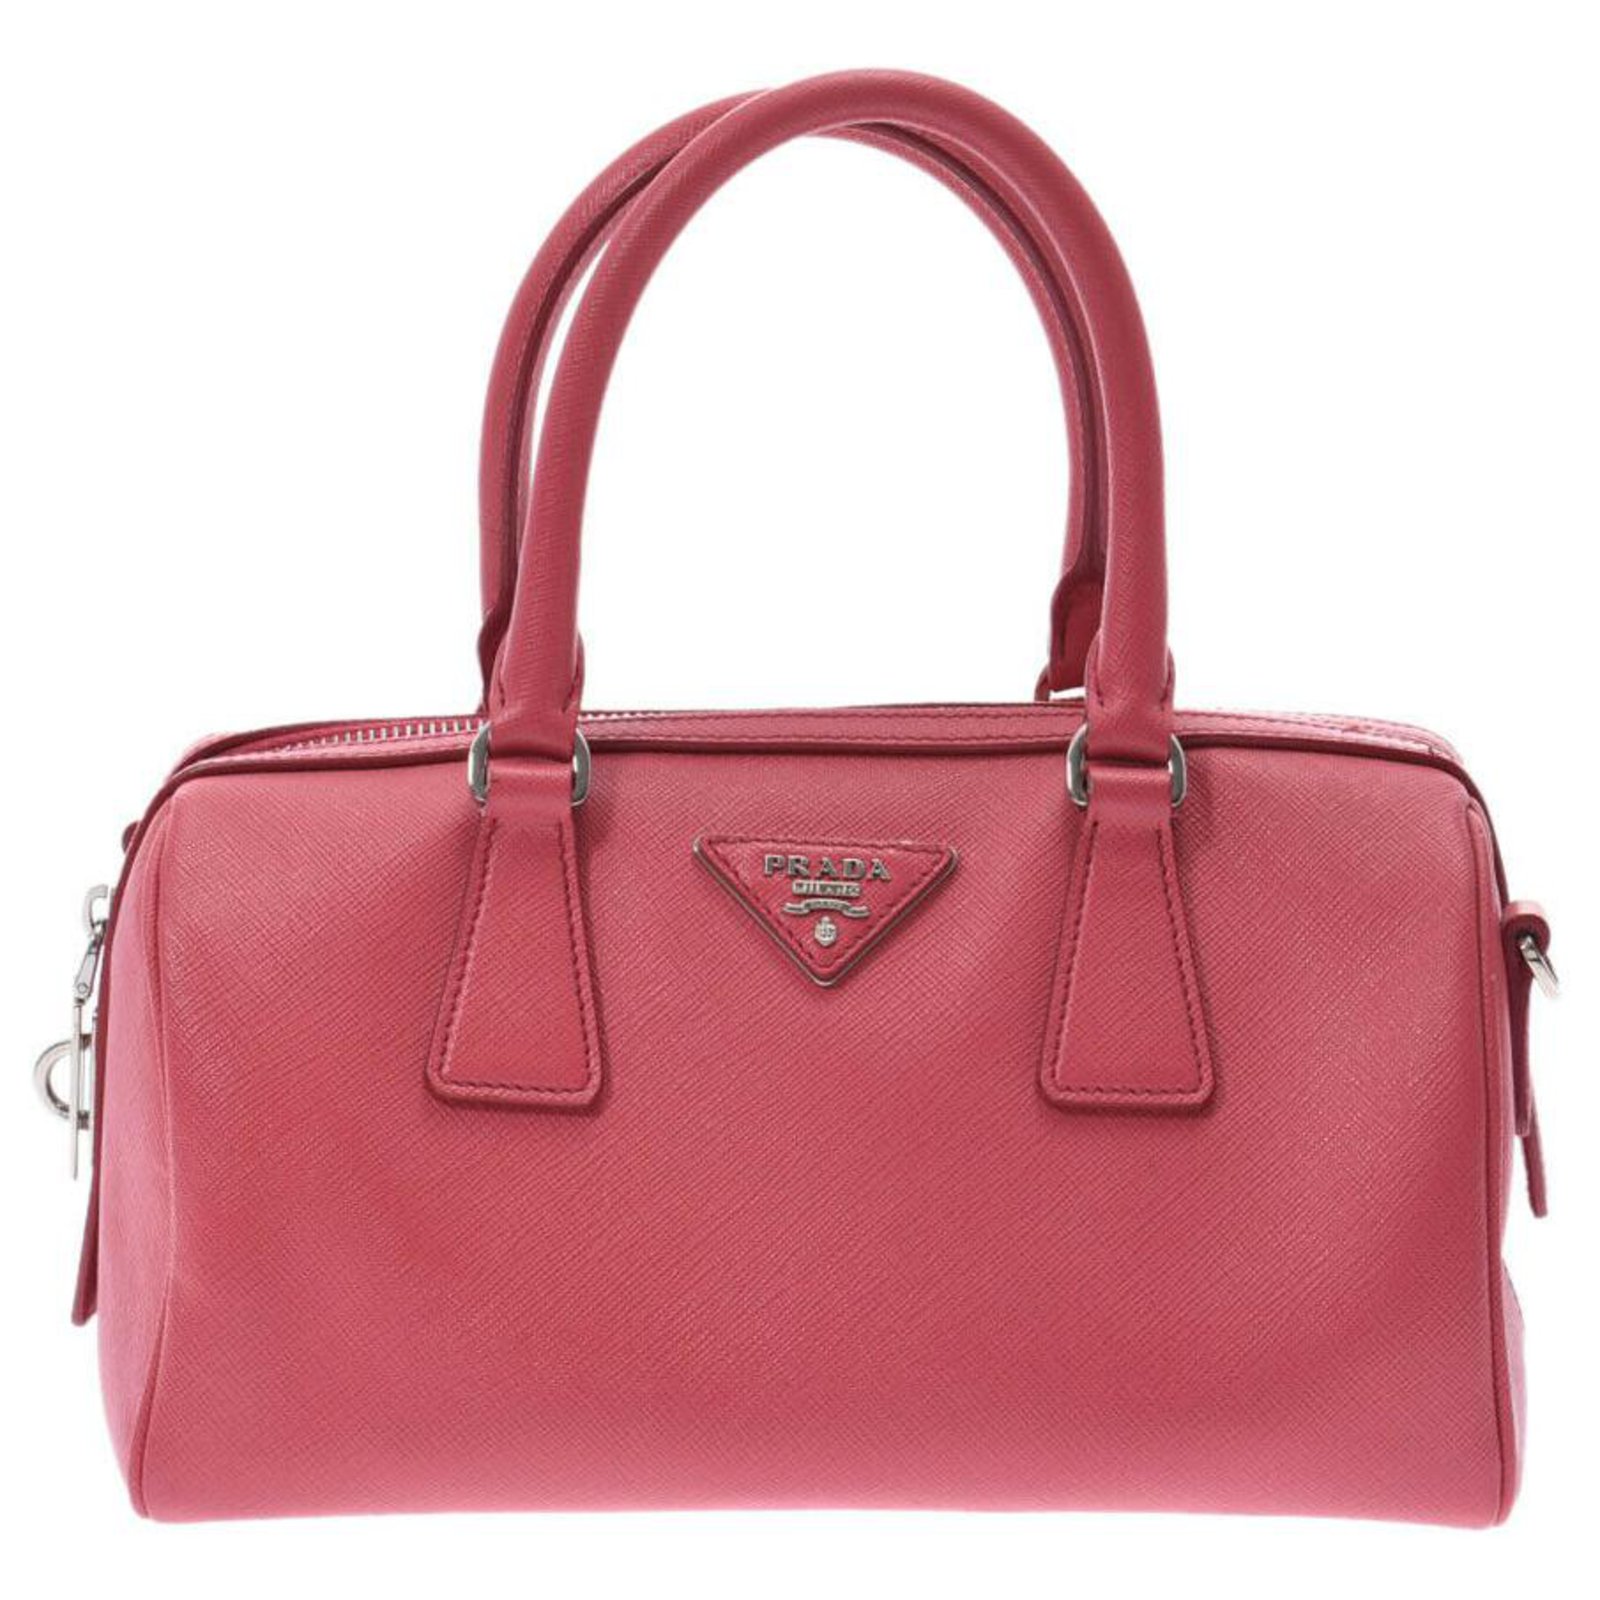 prada handbags pink